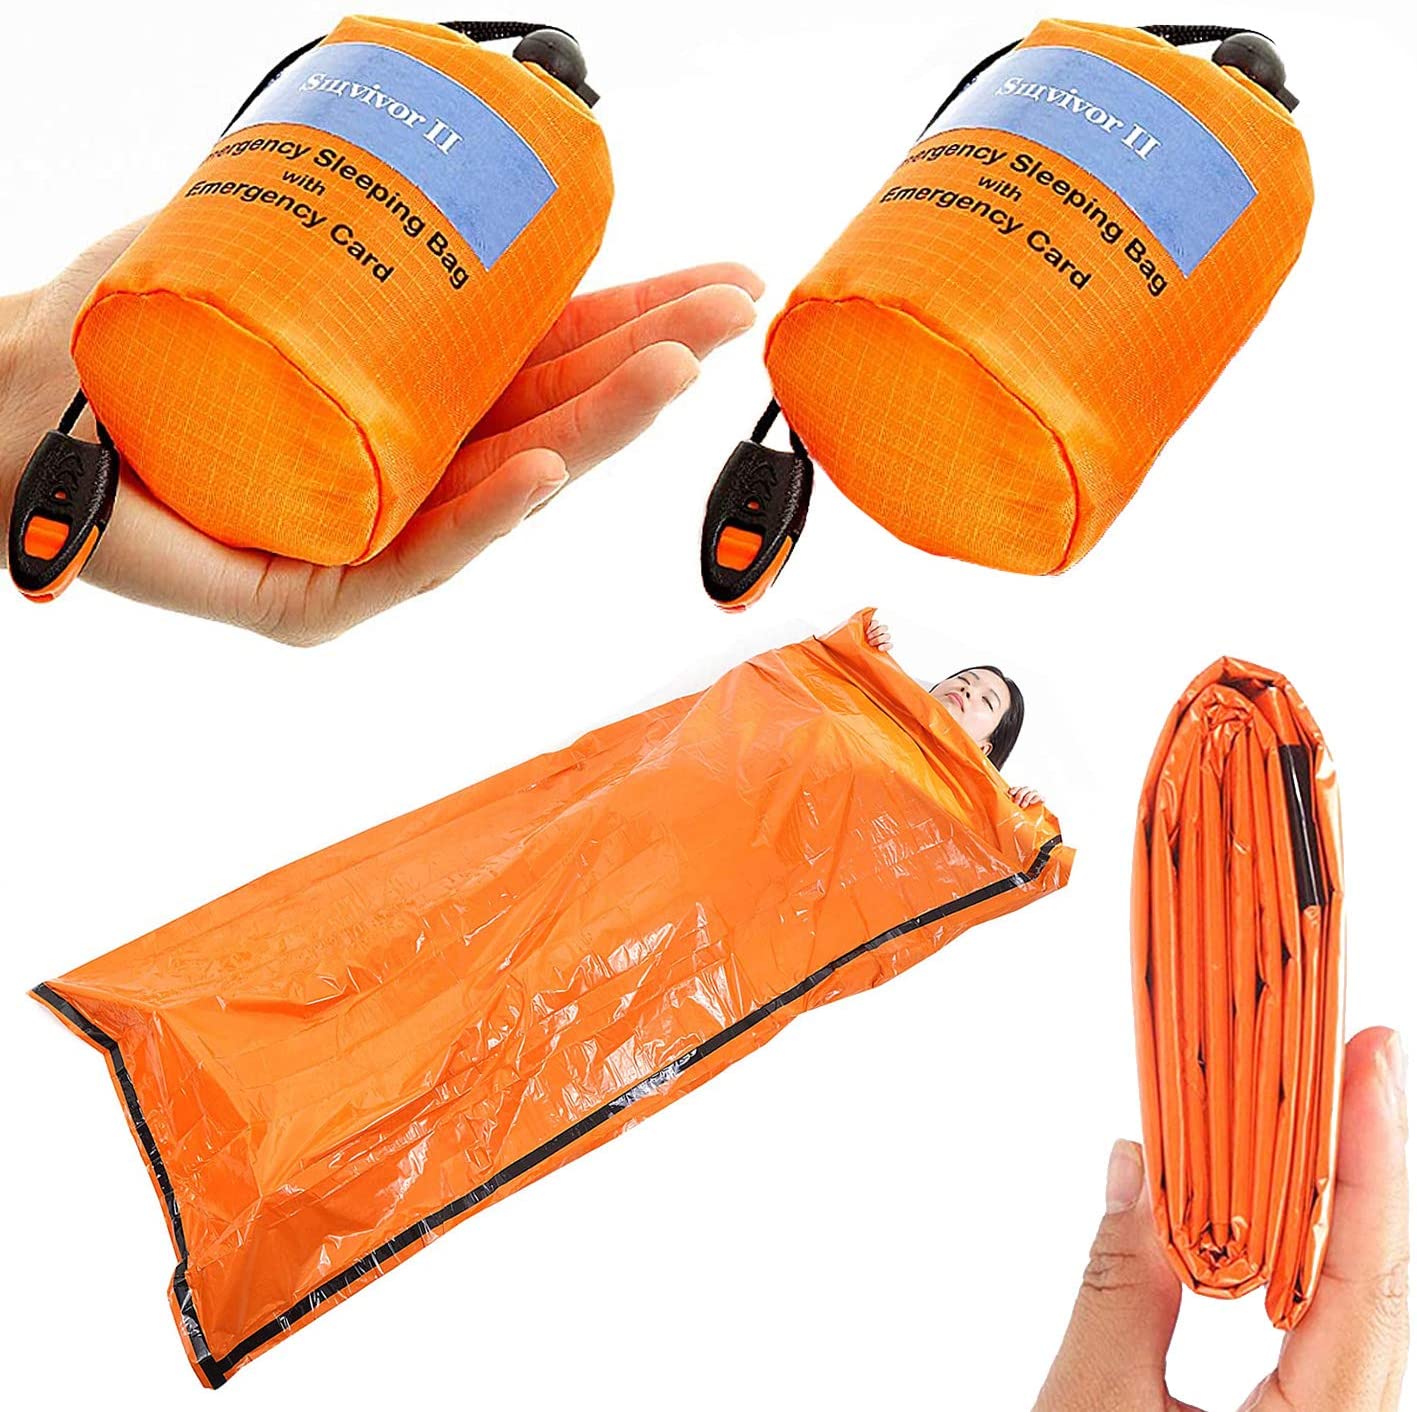 90%の体熱を保つ非常用簡易寝袋 1年保証 売れ筋 携帯 寝袋 非常用 ビヴィ 90%の体熱を保つ 防風 登山 災害 上品 防水